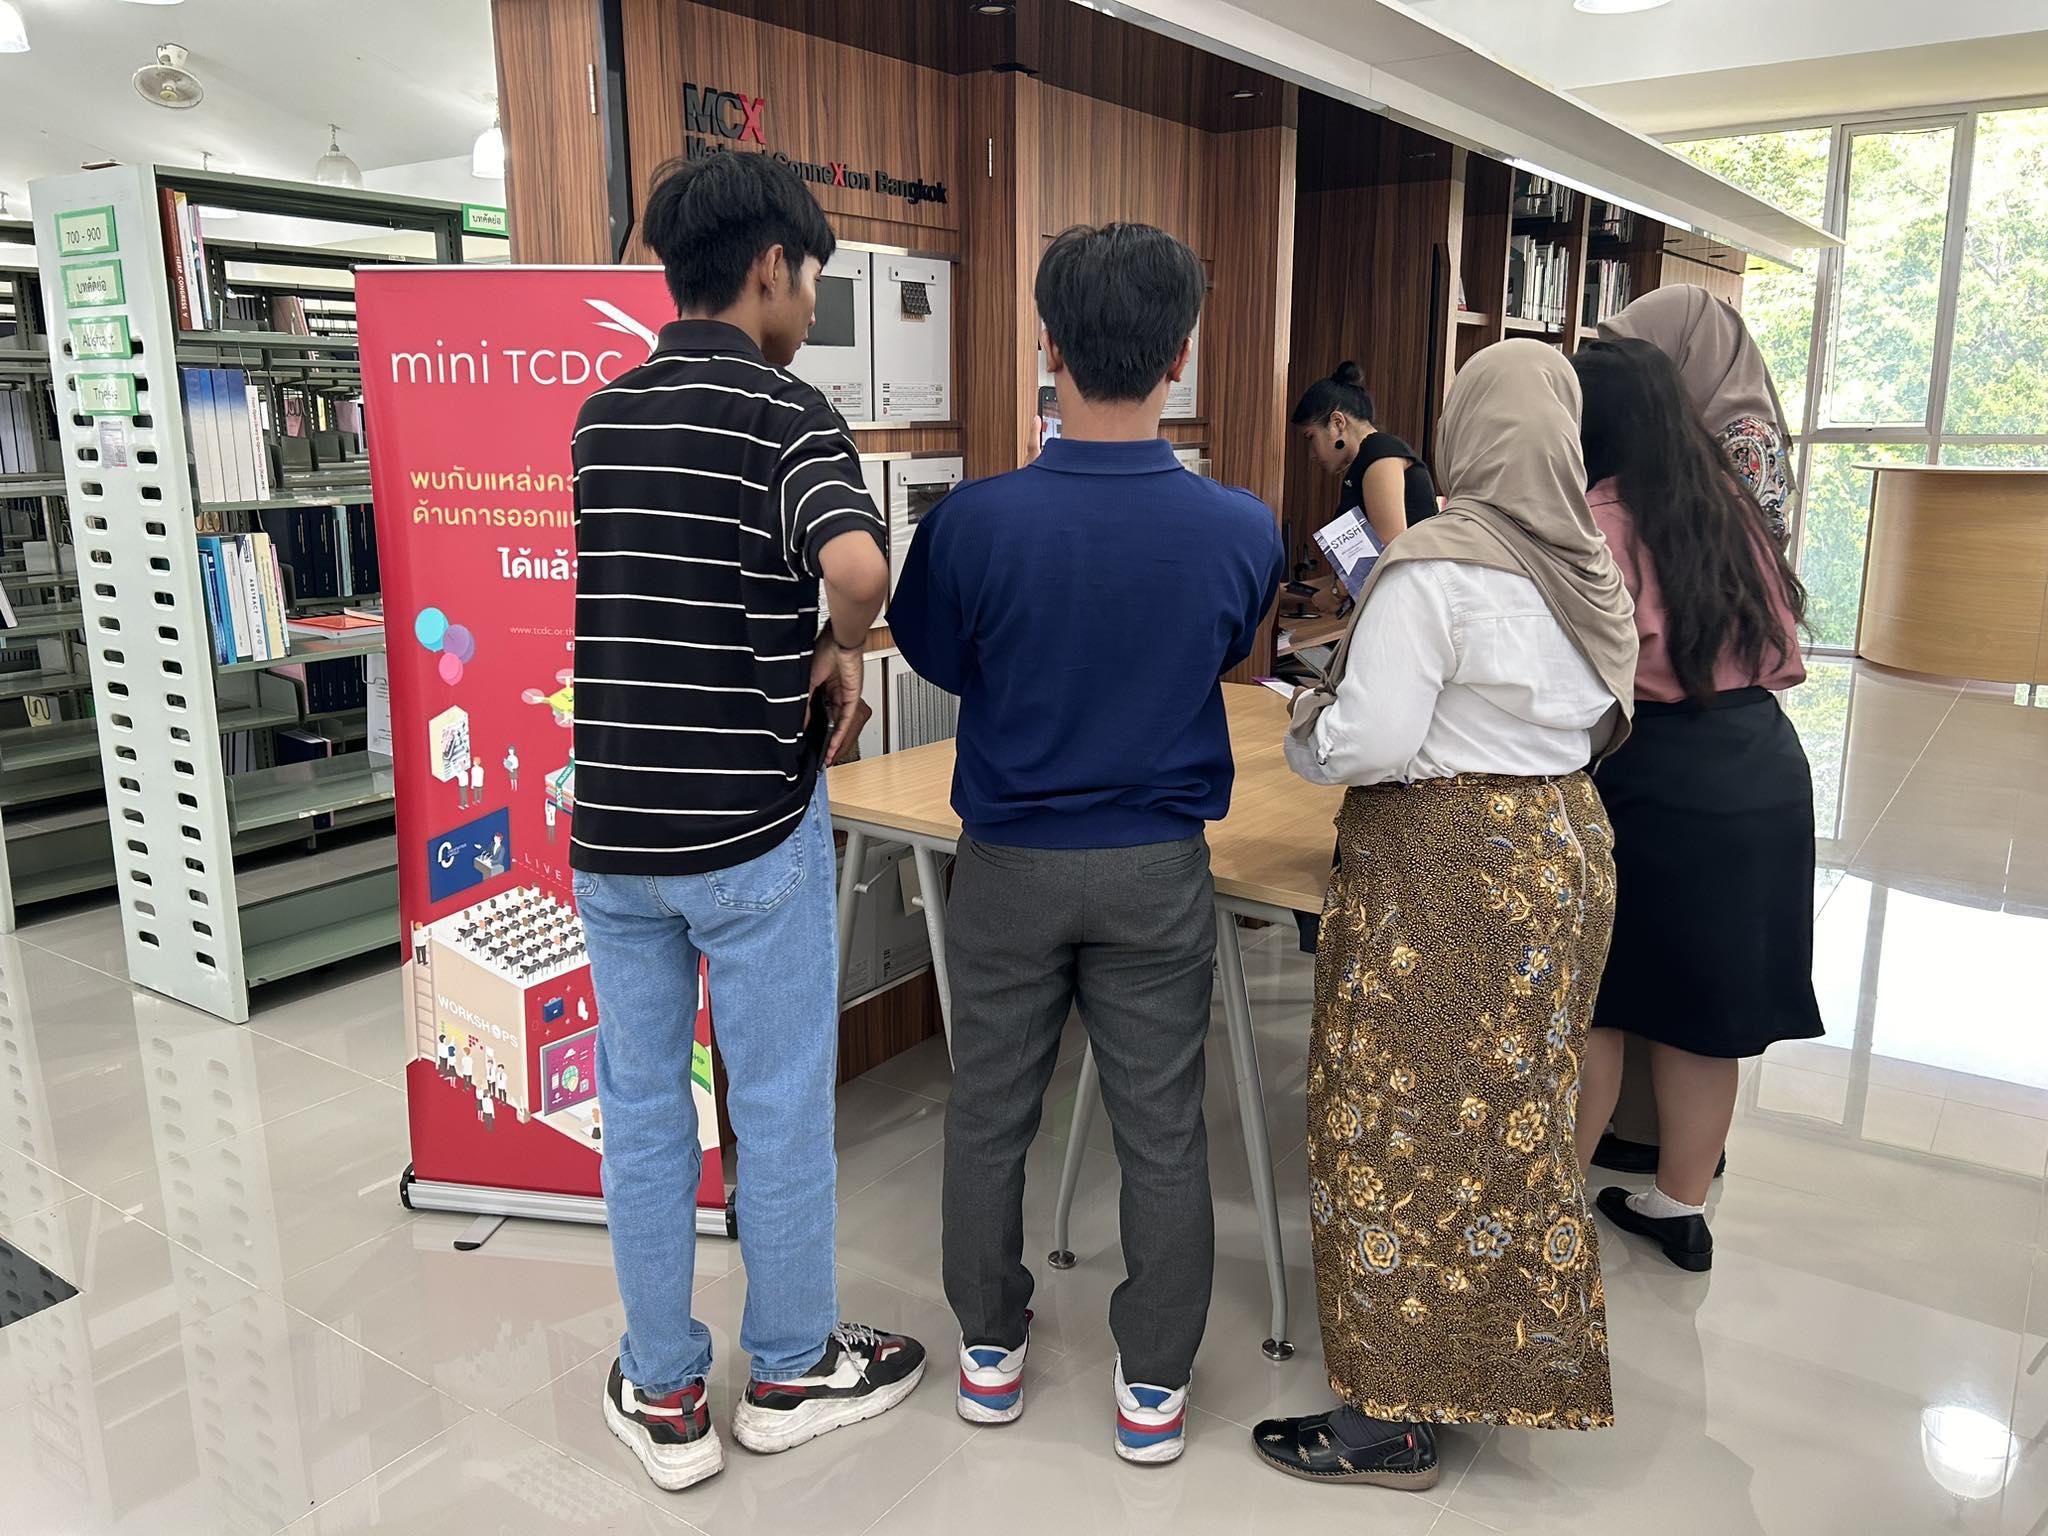 ต้อนรับนักศึกษาแลกเปลี่ยนจาก Universitas Negeri Surabaya ประเทศอินโดนีเซีย เยี่ยมชมสำนักวิทยบริการและเทคโนโลยีสารสนเทศ มหาวิทยาลัยราชภัฏกำแพงเพชร